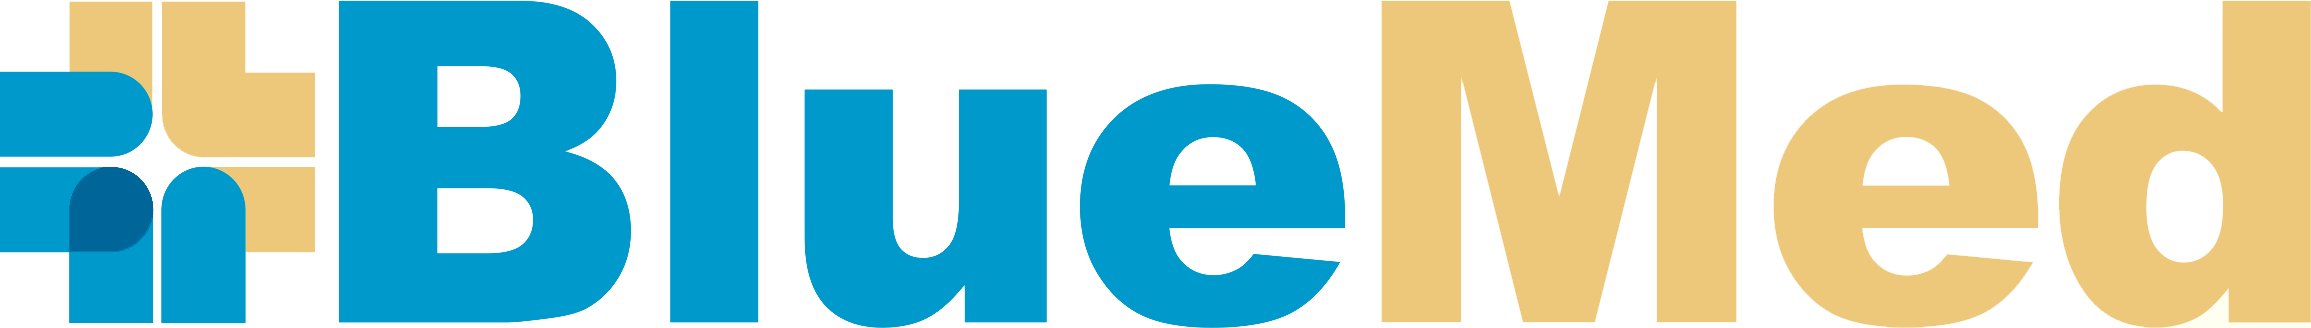 Λογότυπο bluemedical.gr σύνδεσμος για αρχική σελίδα